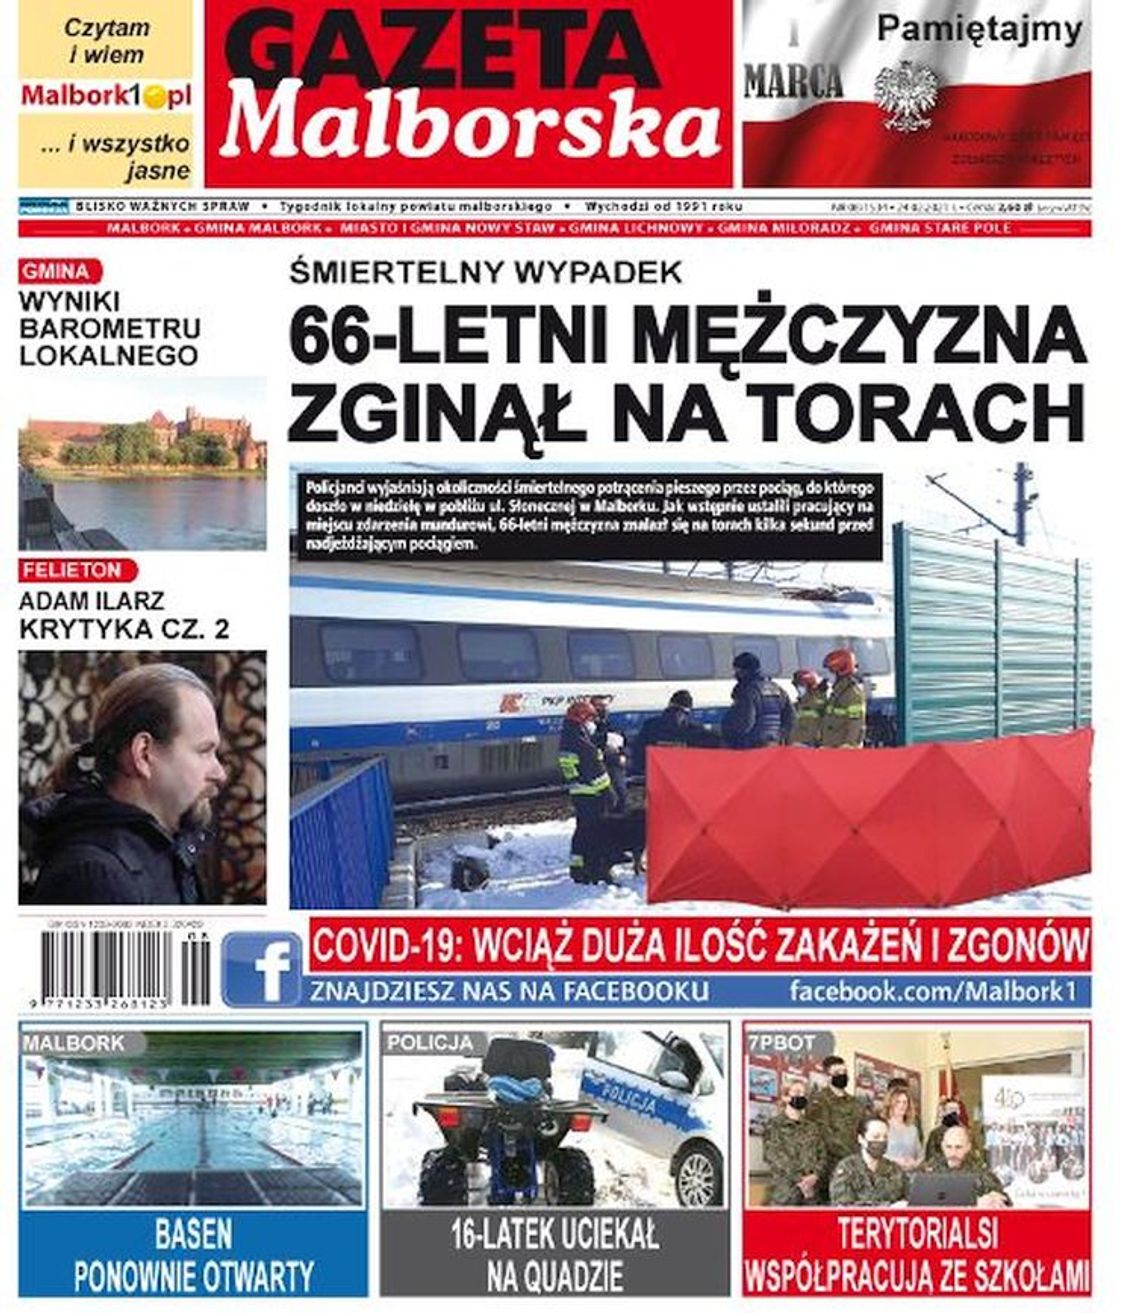 Kolejny numer Gazety Malborskiej już w sprzedaży. Najnowsze wiadomości z Malborka i okolic naszego powiatu już w Twoim kiosku. O czym piszemy w tym numerze?